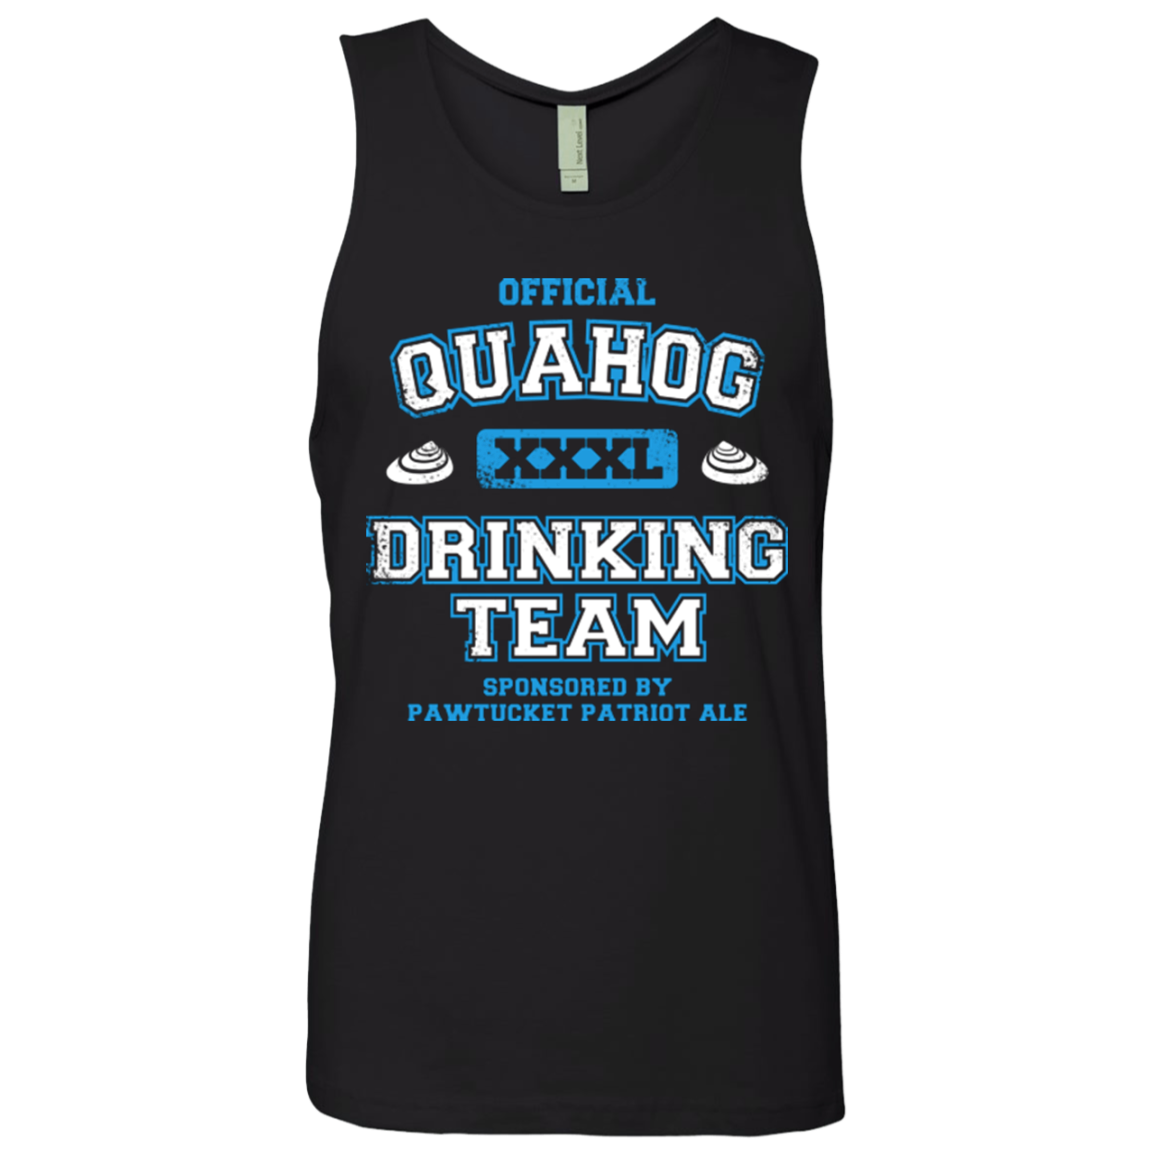 Quahog Drinking Team Men's Premium Tank Top